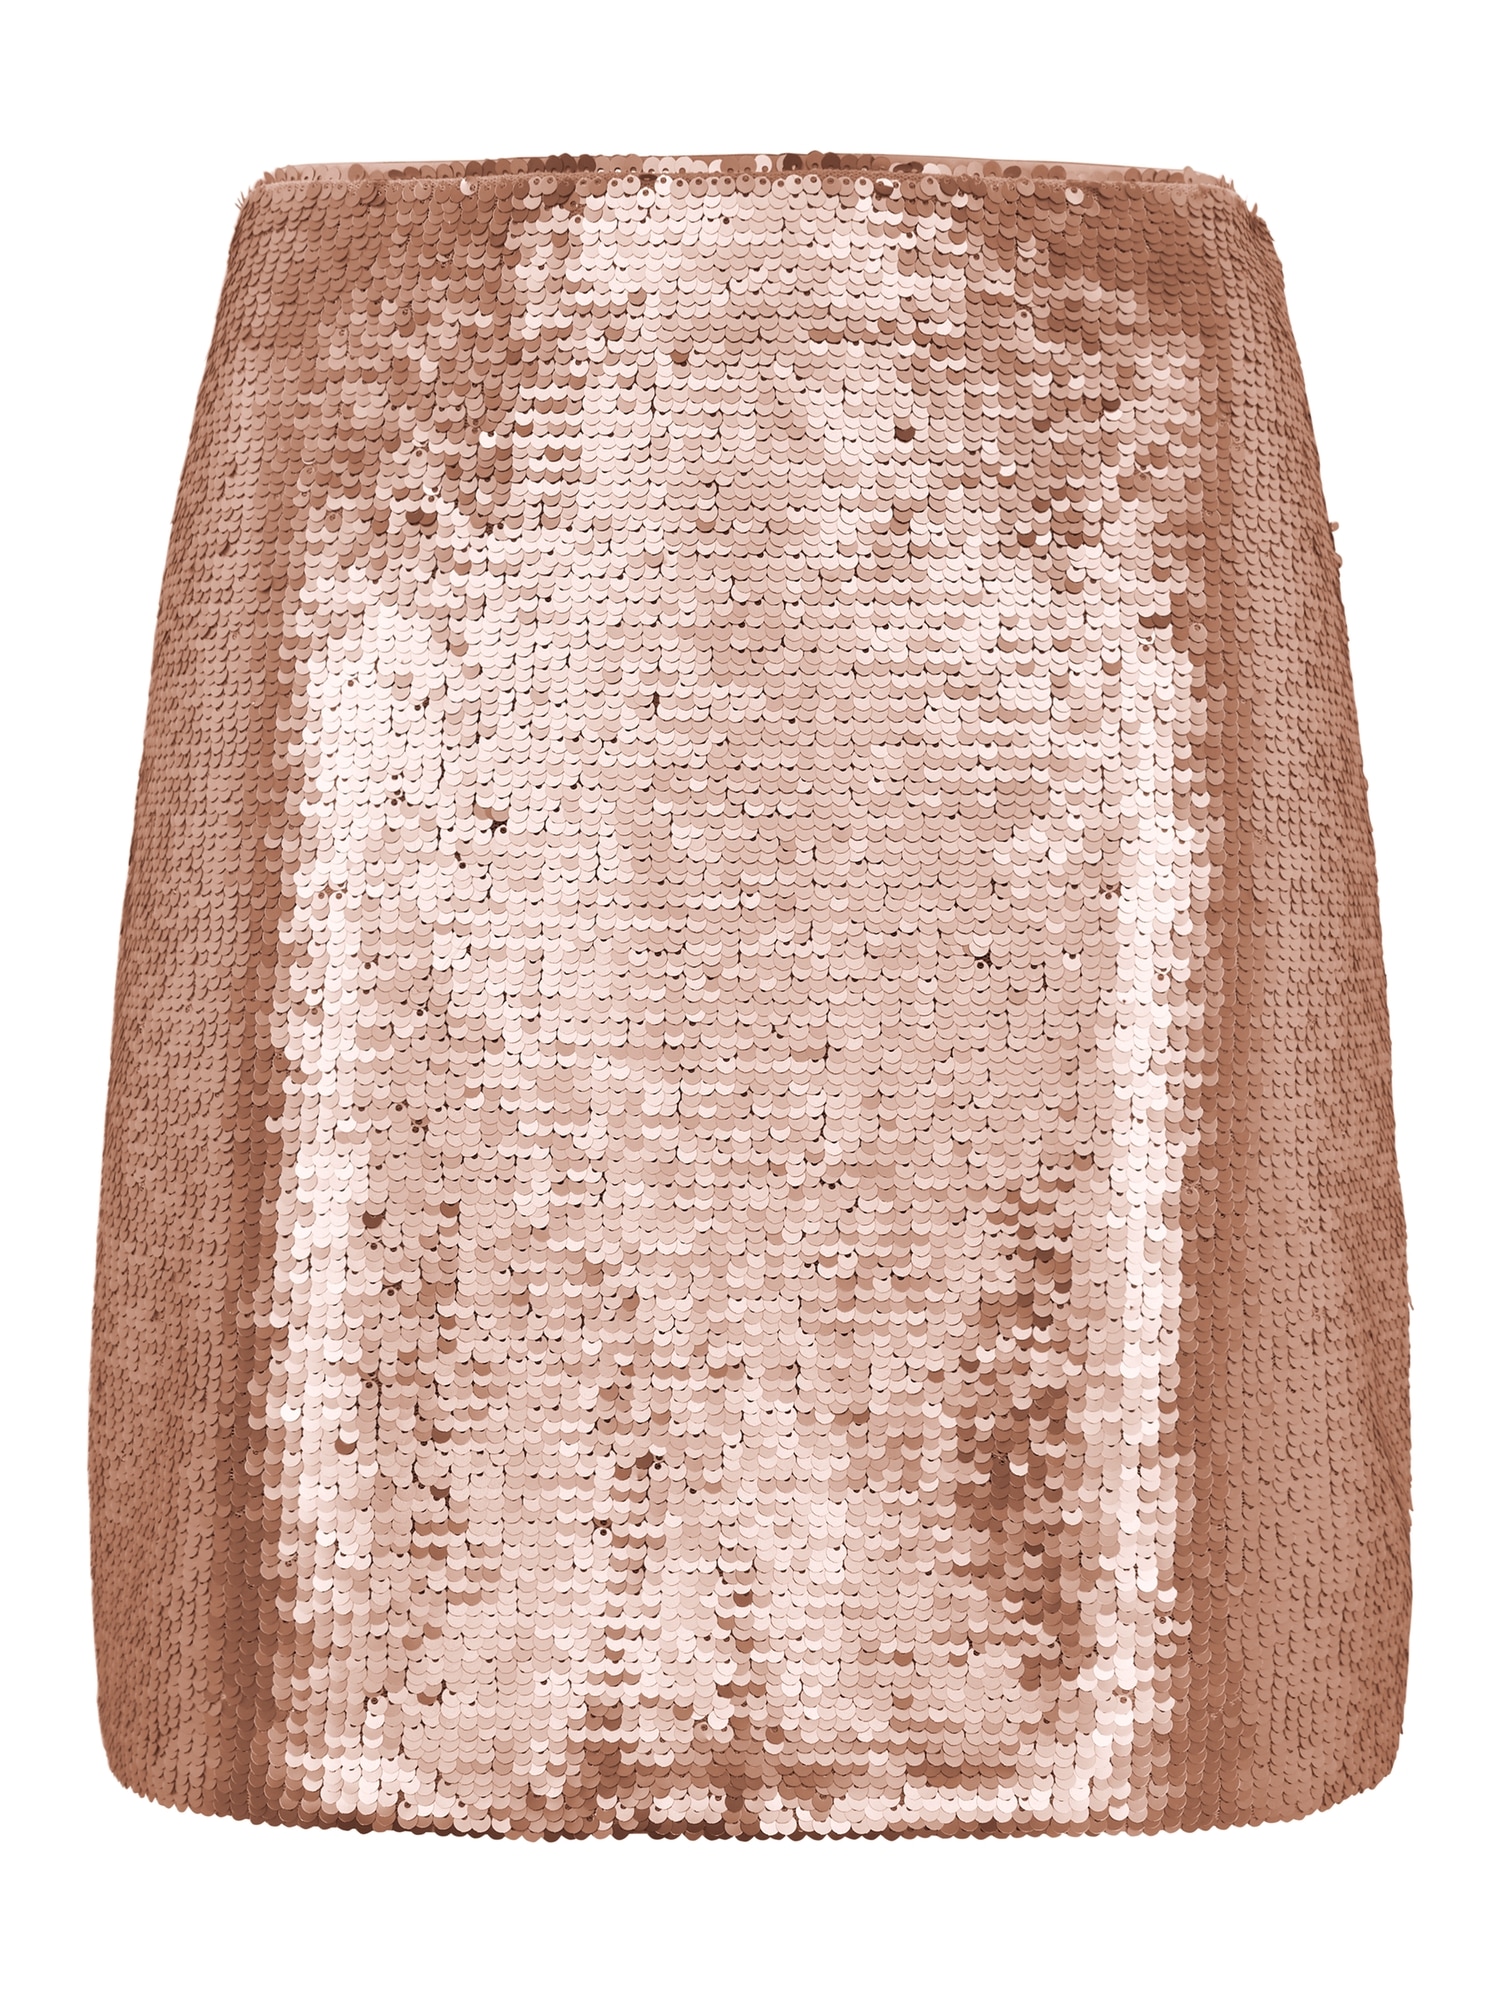 Sequin Mini Skirt